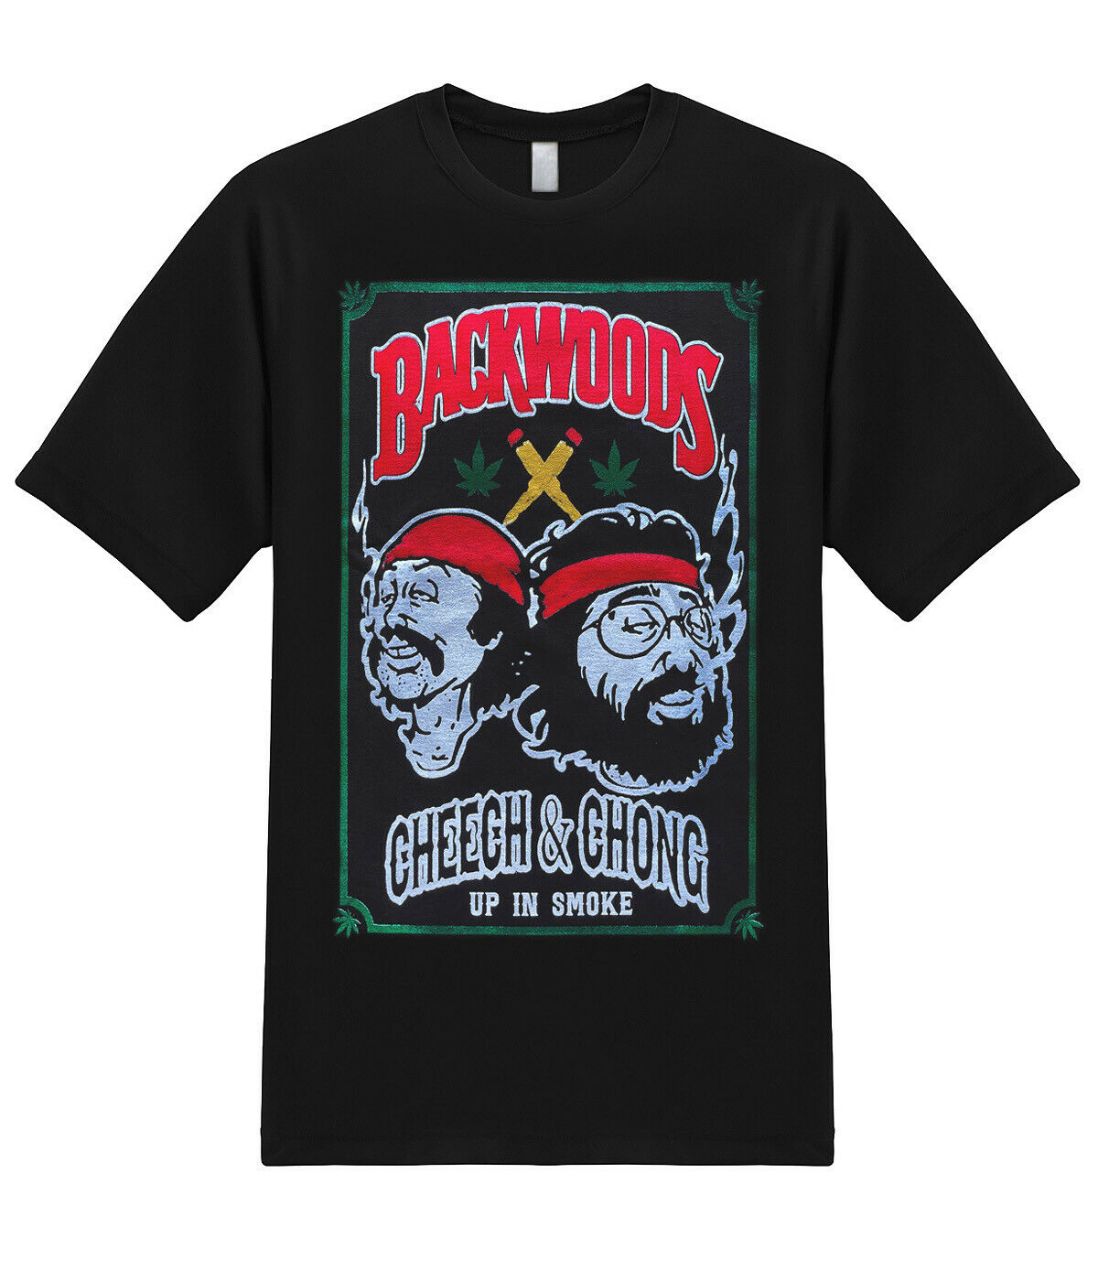 Cheech & Chong Up In Smoke Graphic T-Shirt